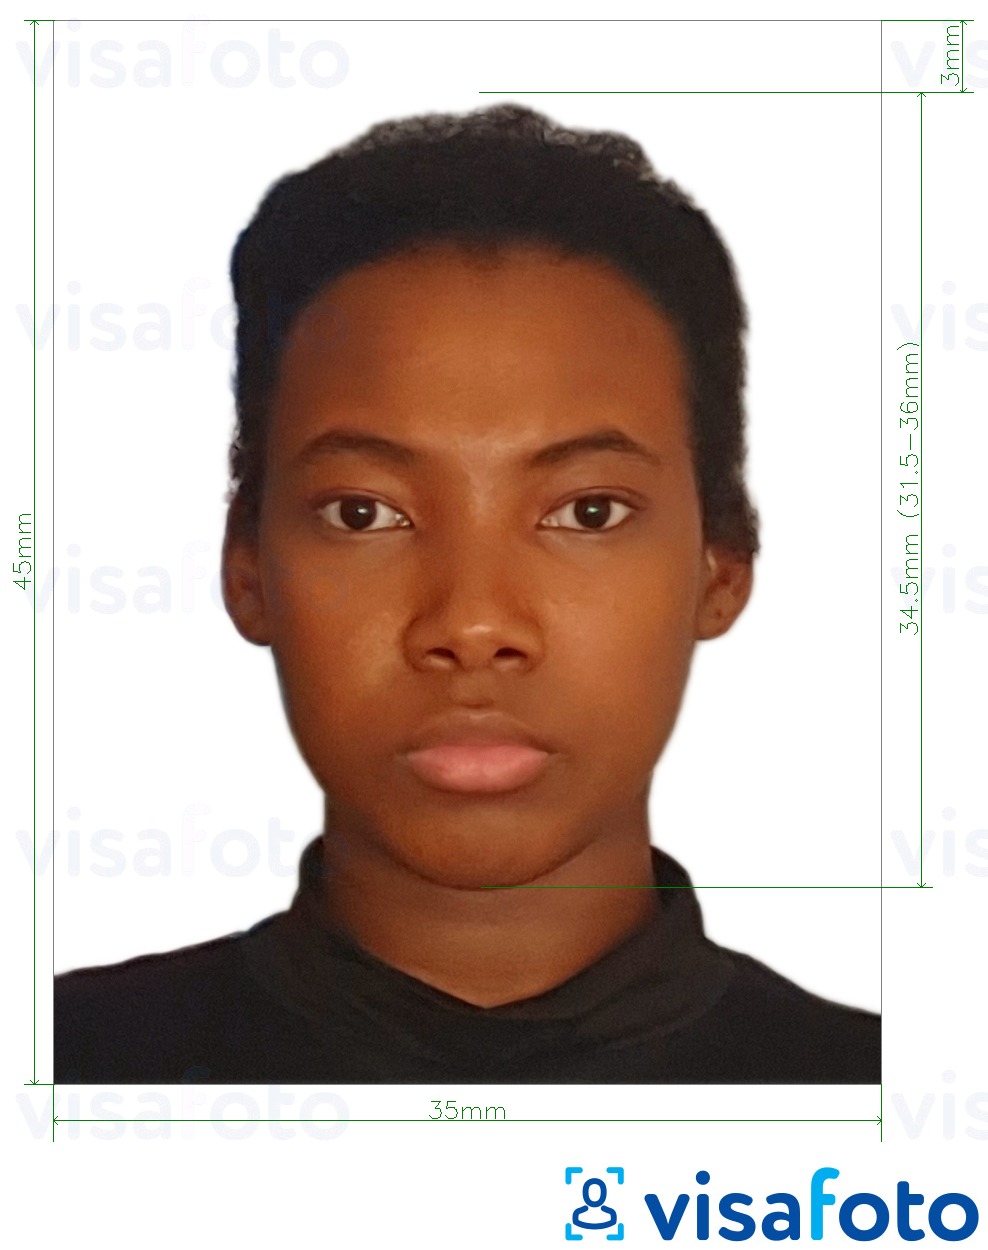  Nigeeria viisa 3,5x4,5 cm (35x45 mm) fotonäidis koos täpse infoga mõõtude kohta.